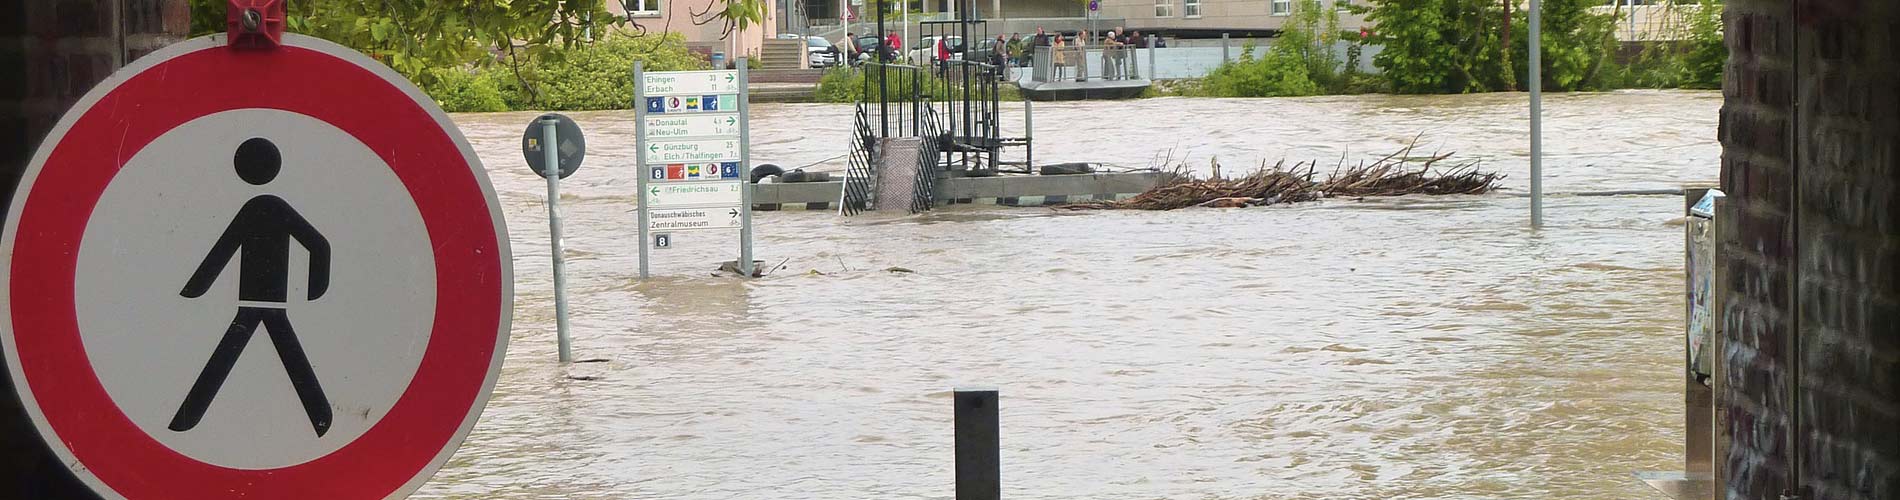 Katastrophenerlass für Unwetteropfer in Rheinland-Pfalz